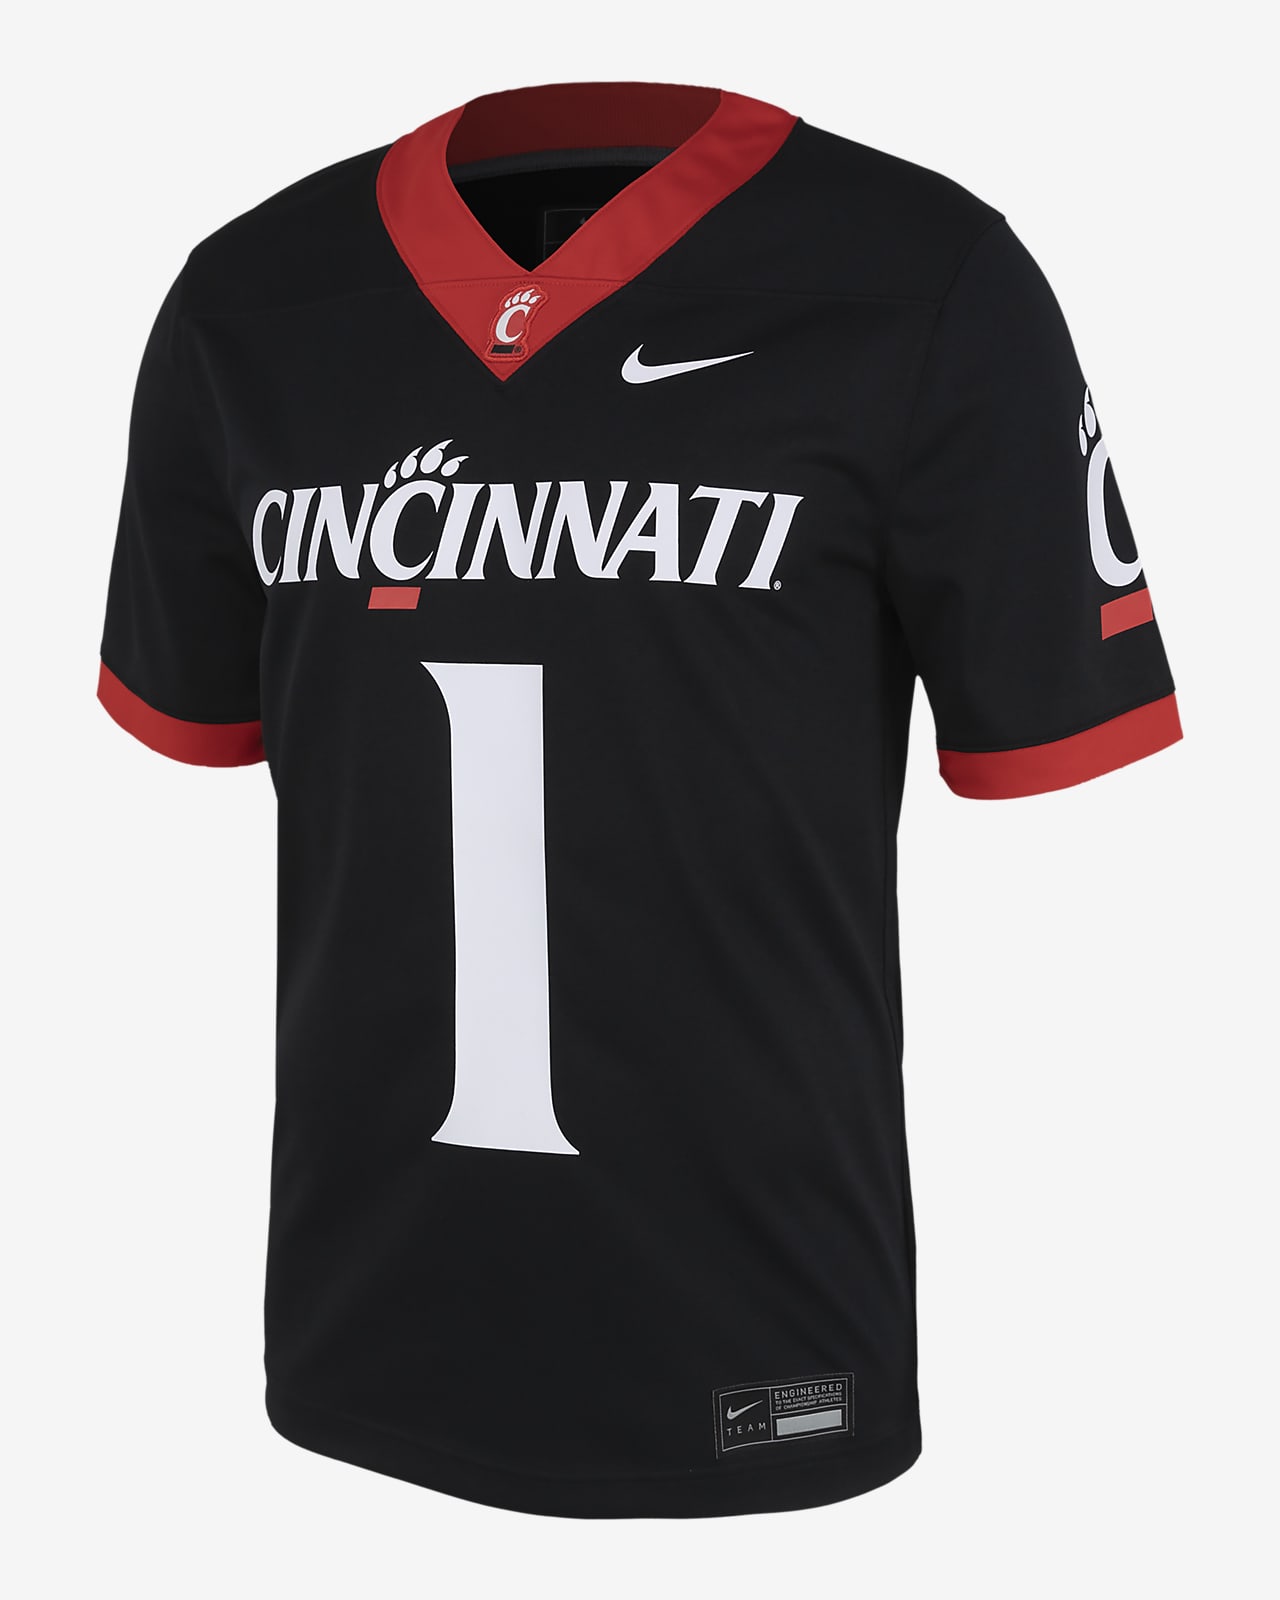 Cincinnati 2023 Men's Nike College Football Jersey